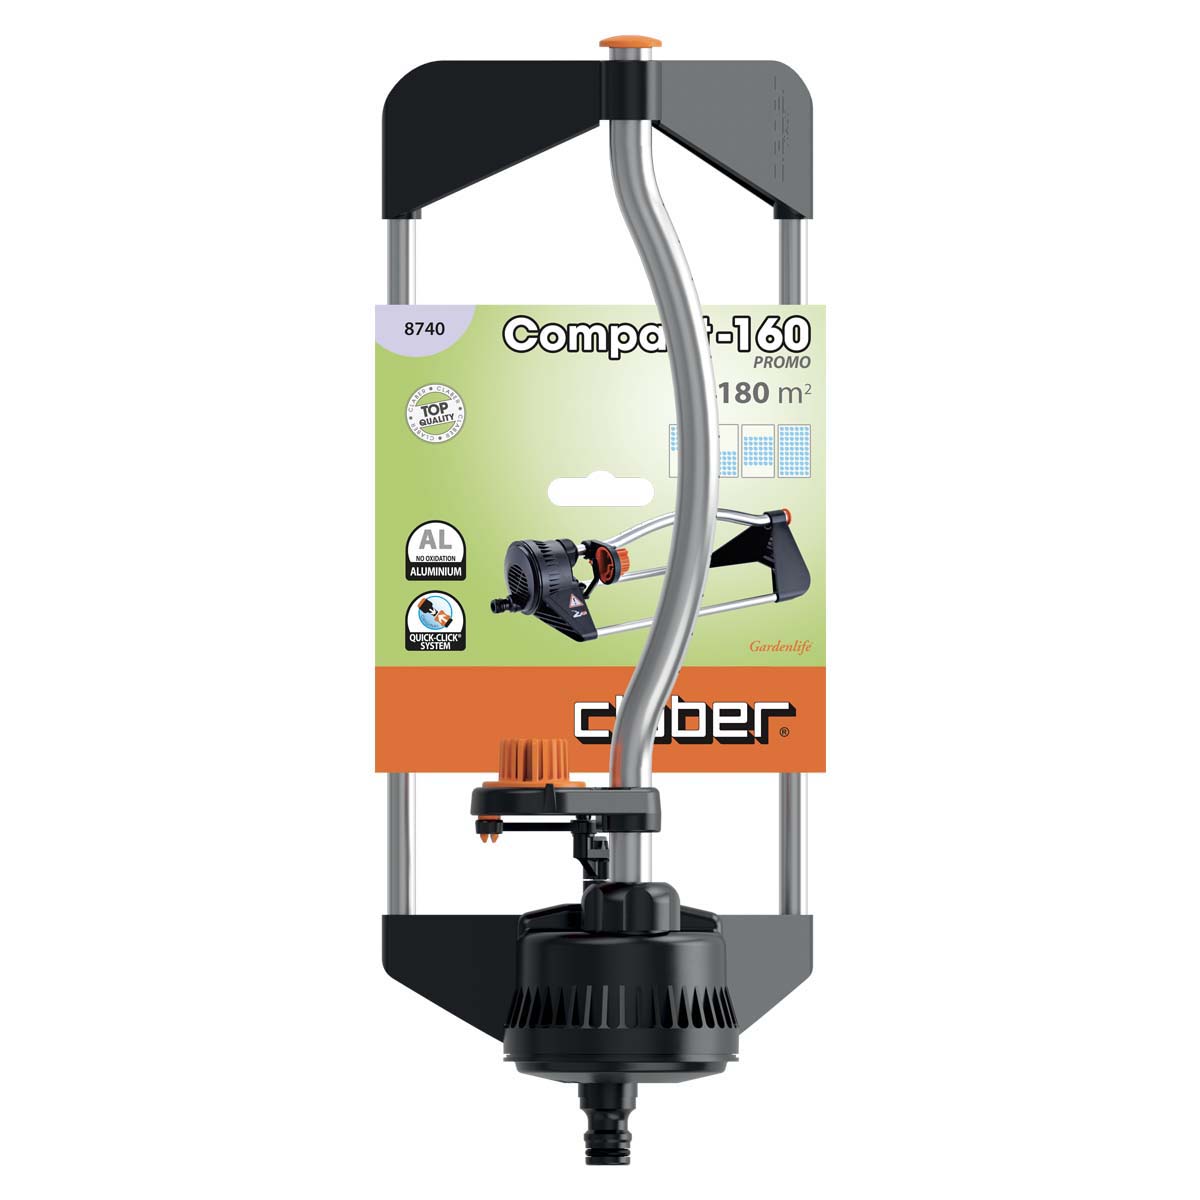 Claber Irrigatore Compact-160 Promo Claber 